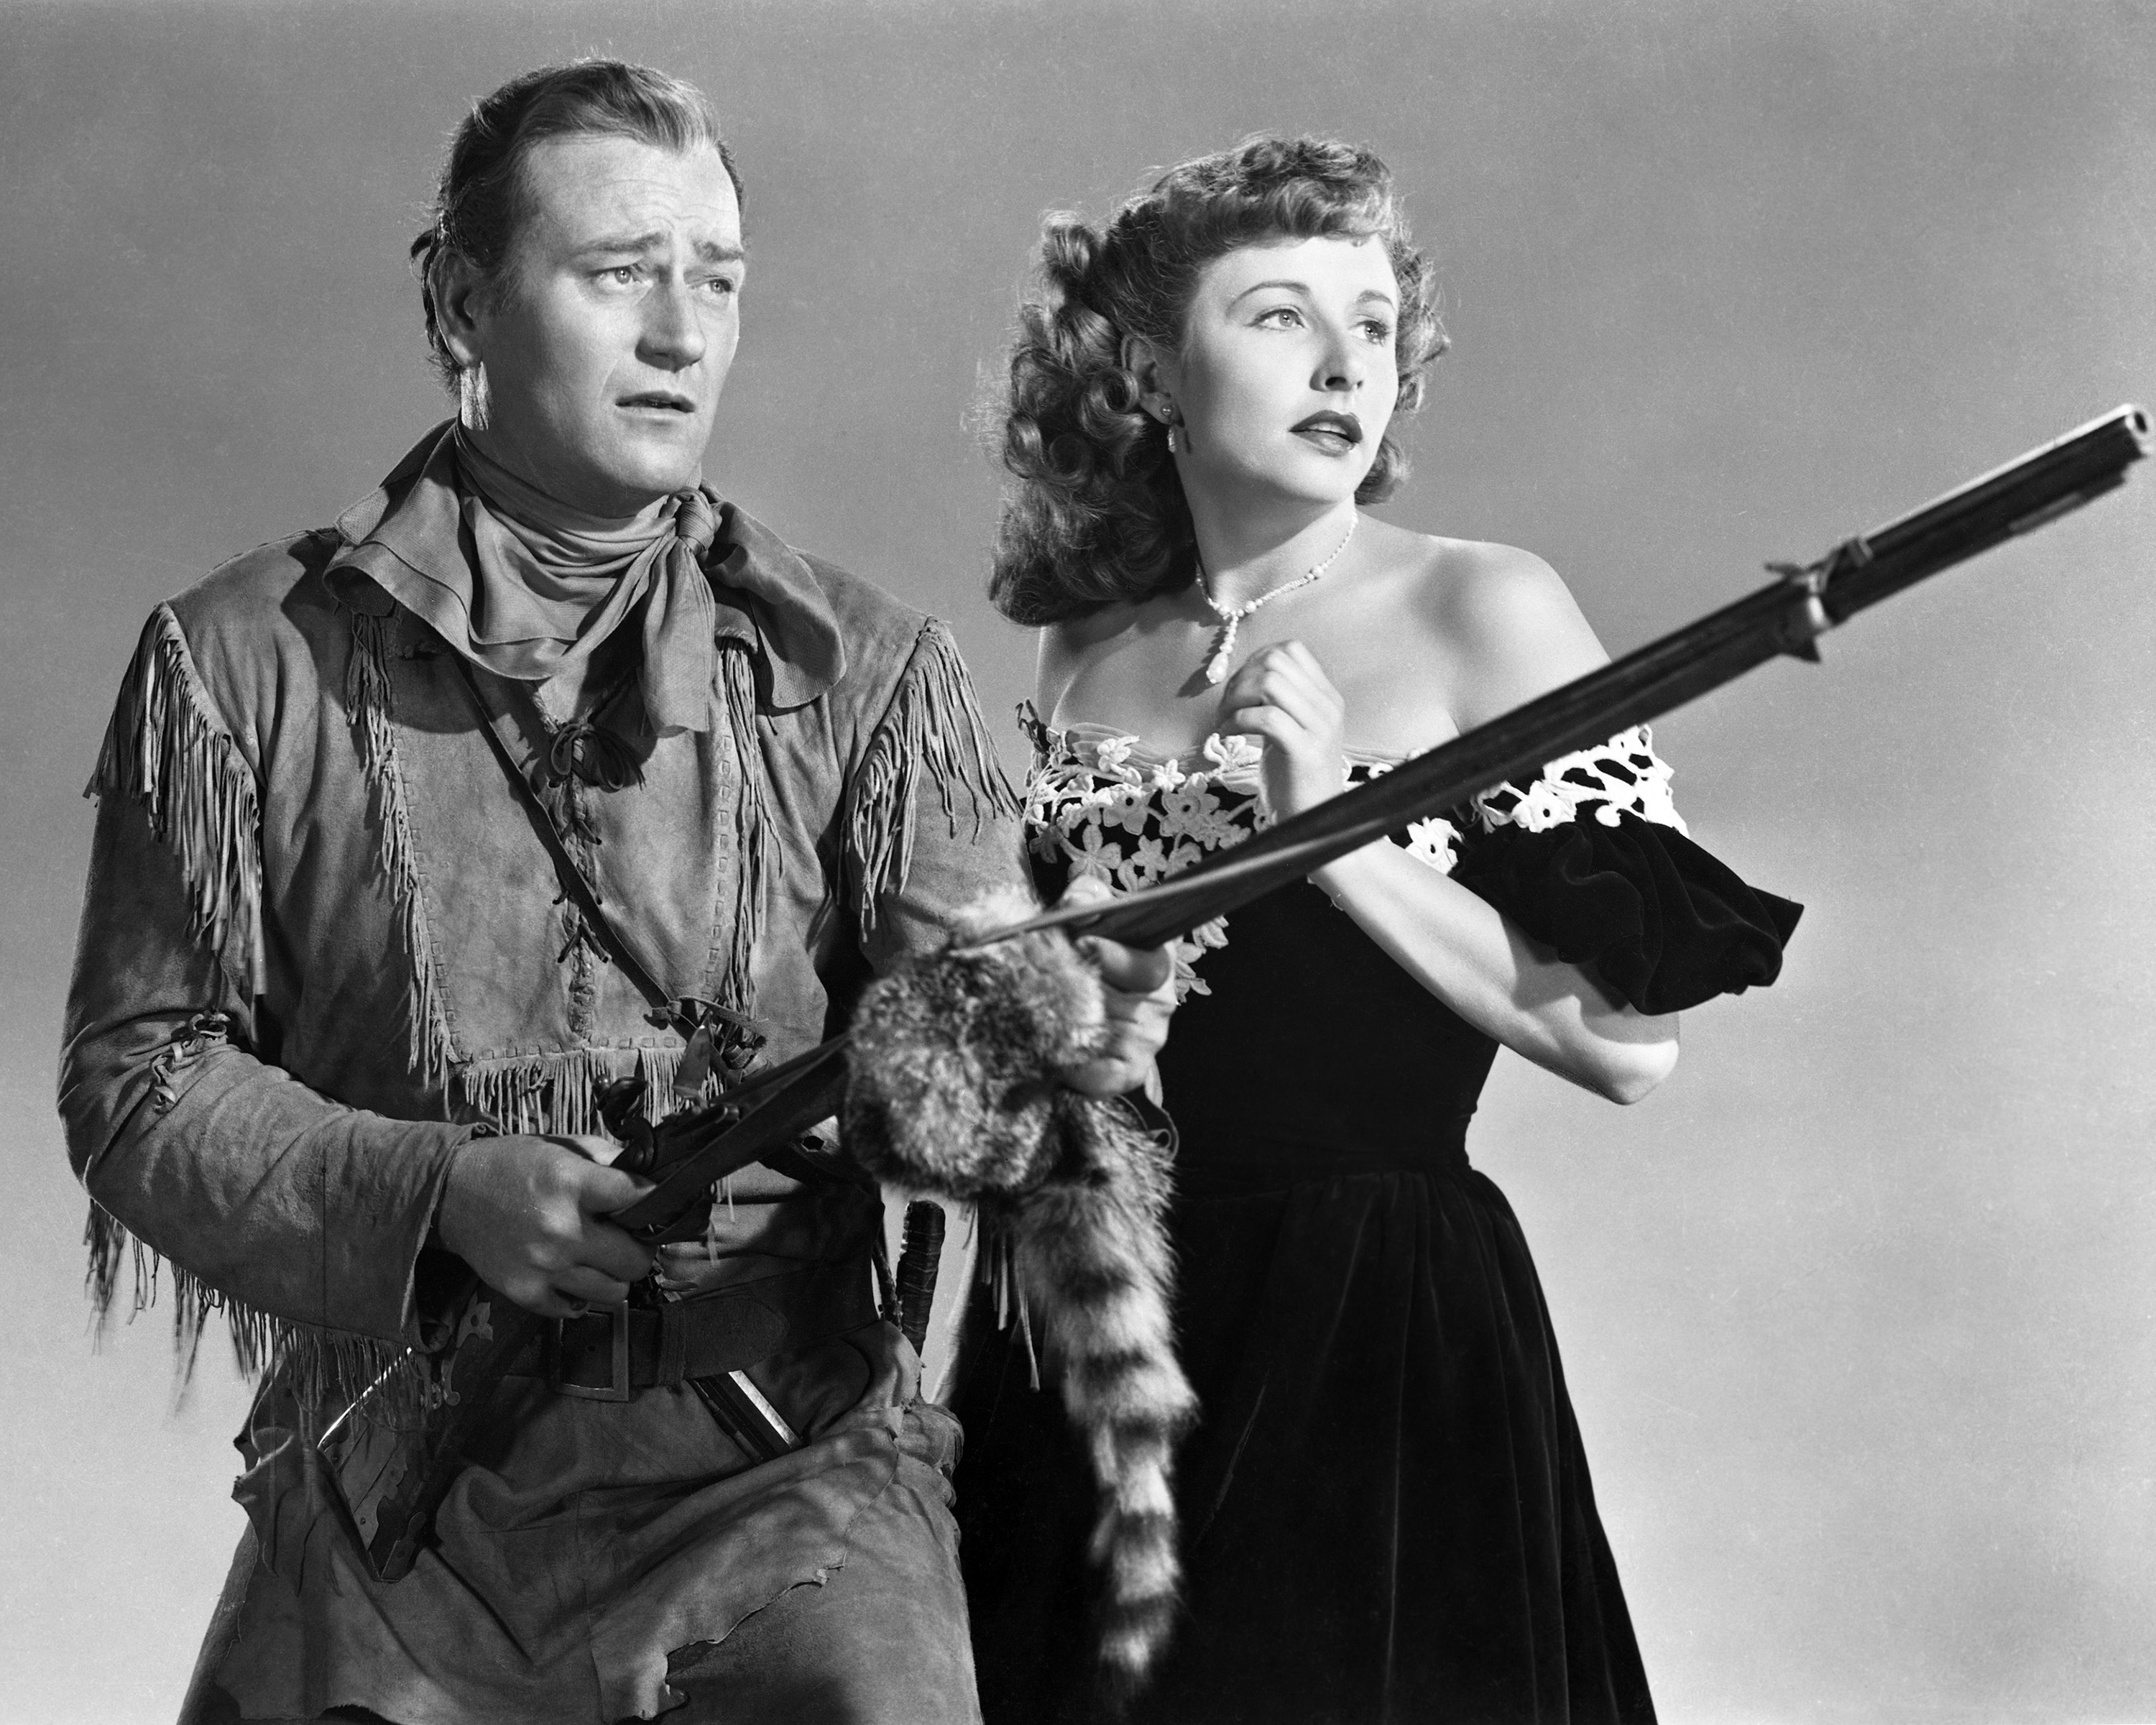 John Wayne with a rifle